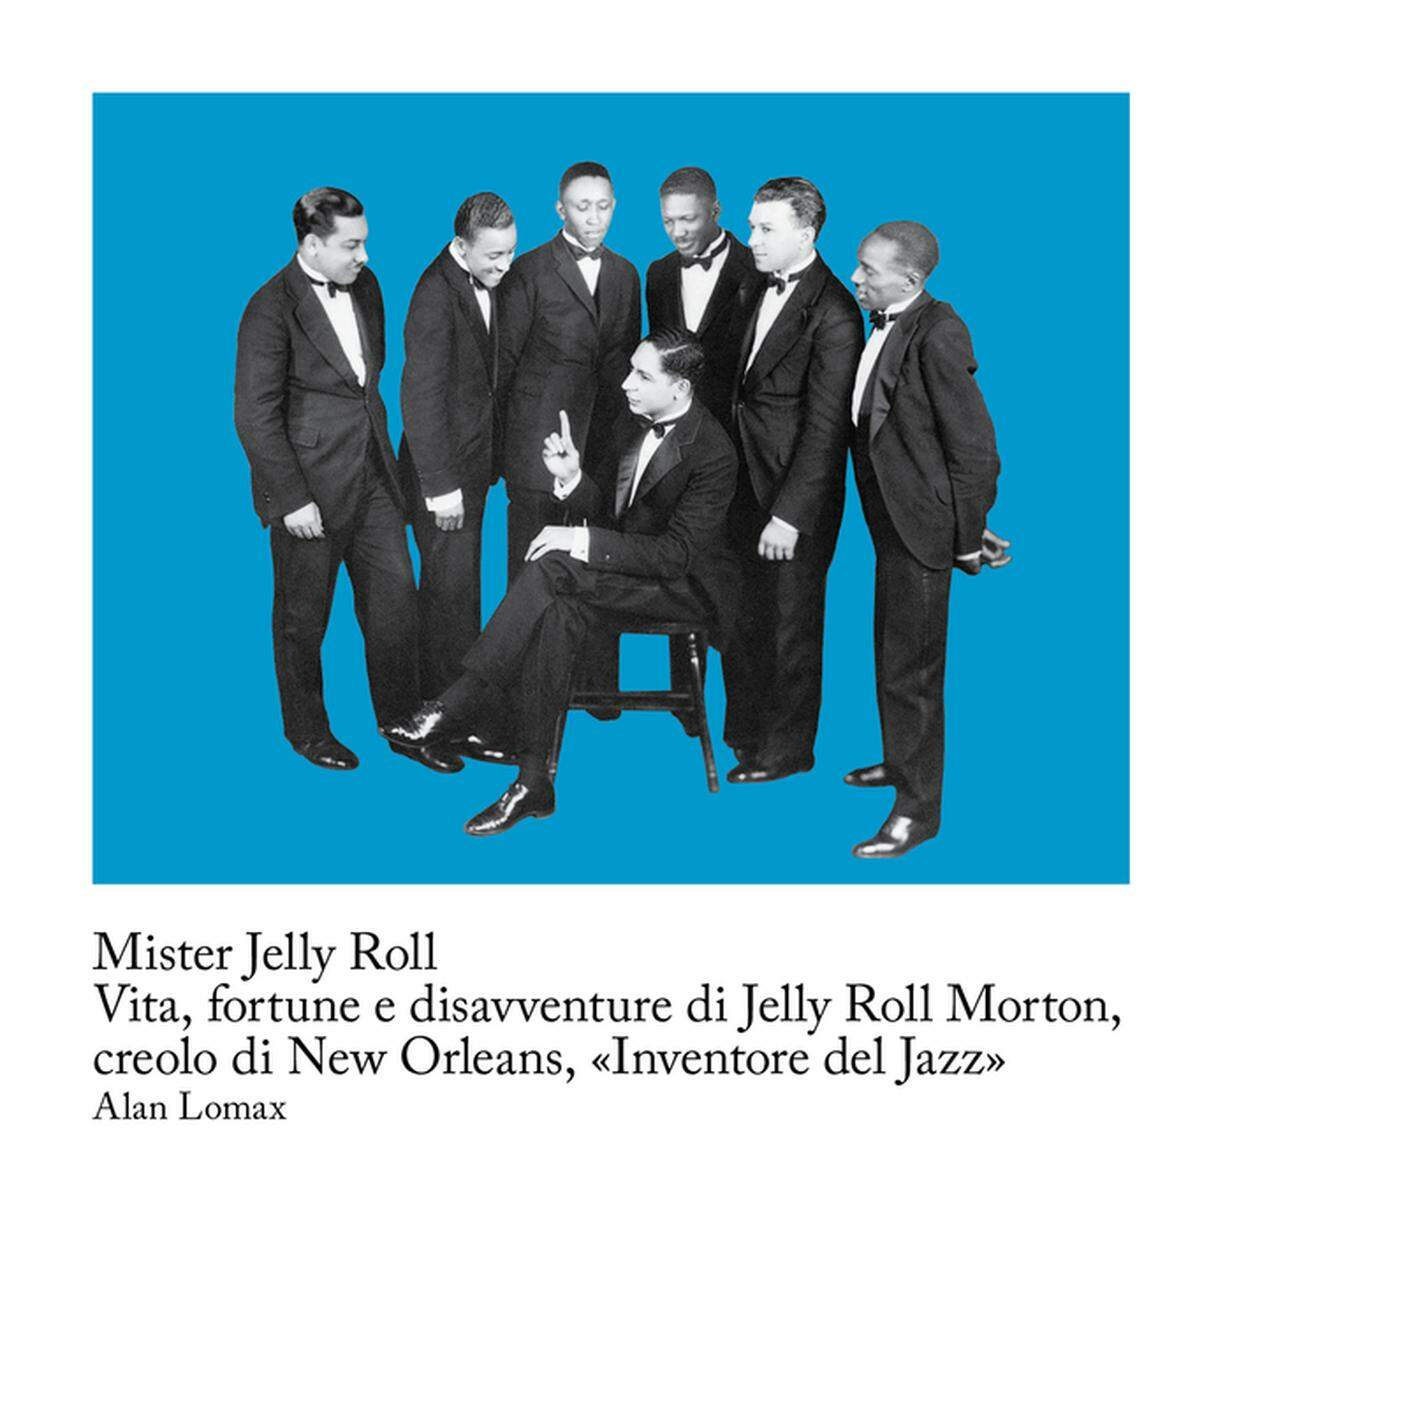 Alan Lomax, "Mister Jelly Roll. Vita, fortune e disavventure di Jelly Roll Morton, creolo di New Orleans, «Inventore del Jazz»", Quodlibet (dettaglio copertina)